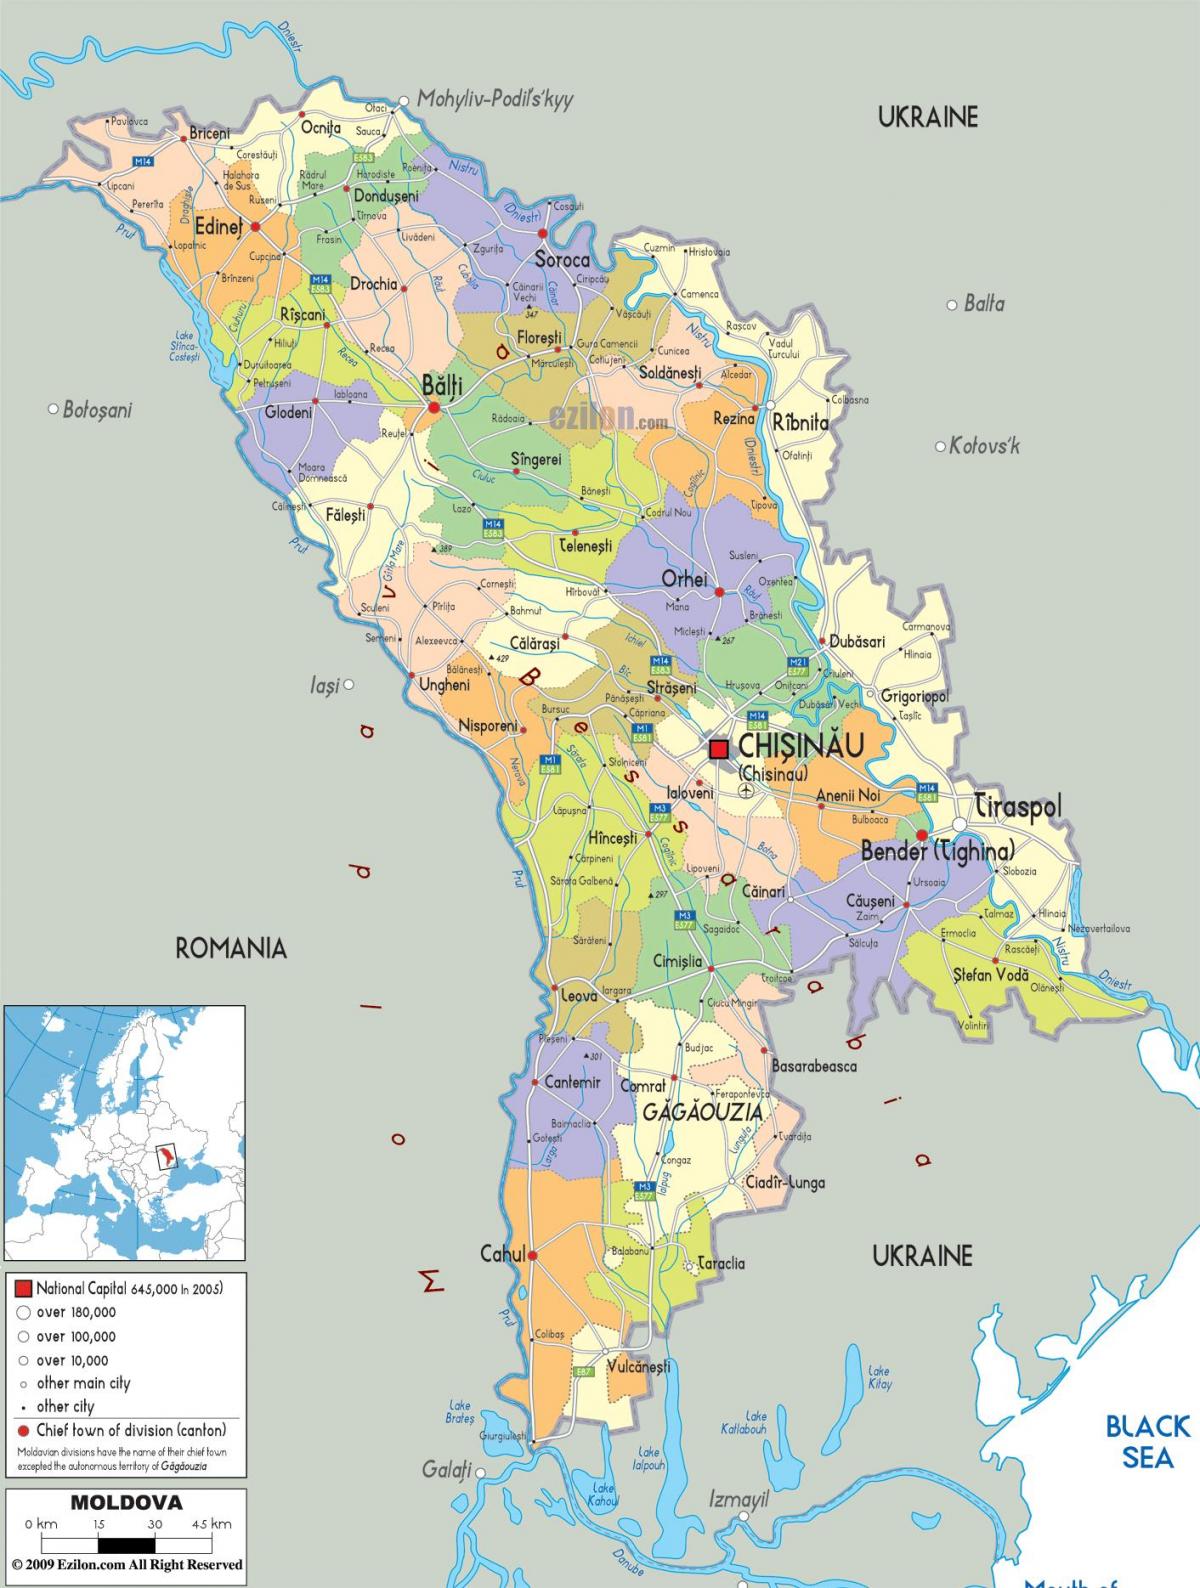 Χάρτης της τιρασπόλ Μολδαβία